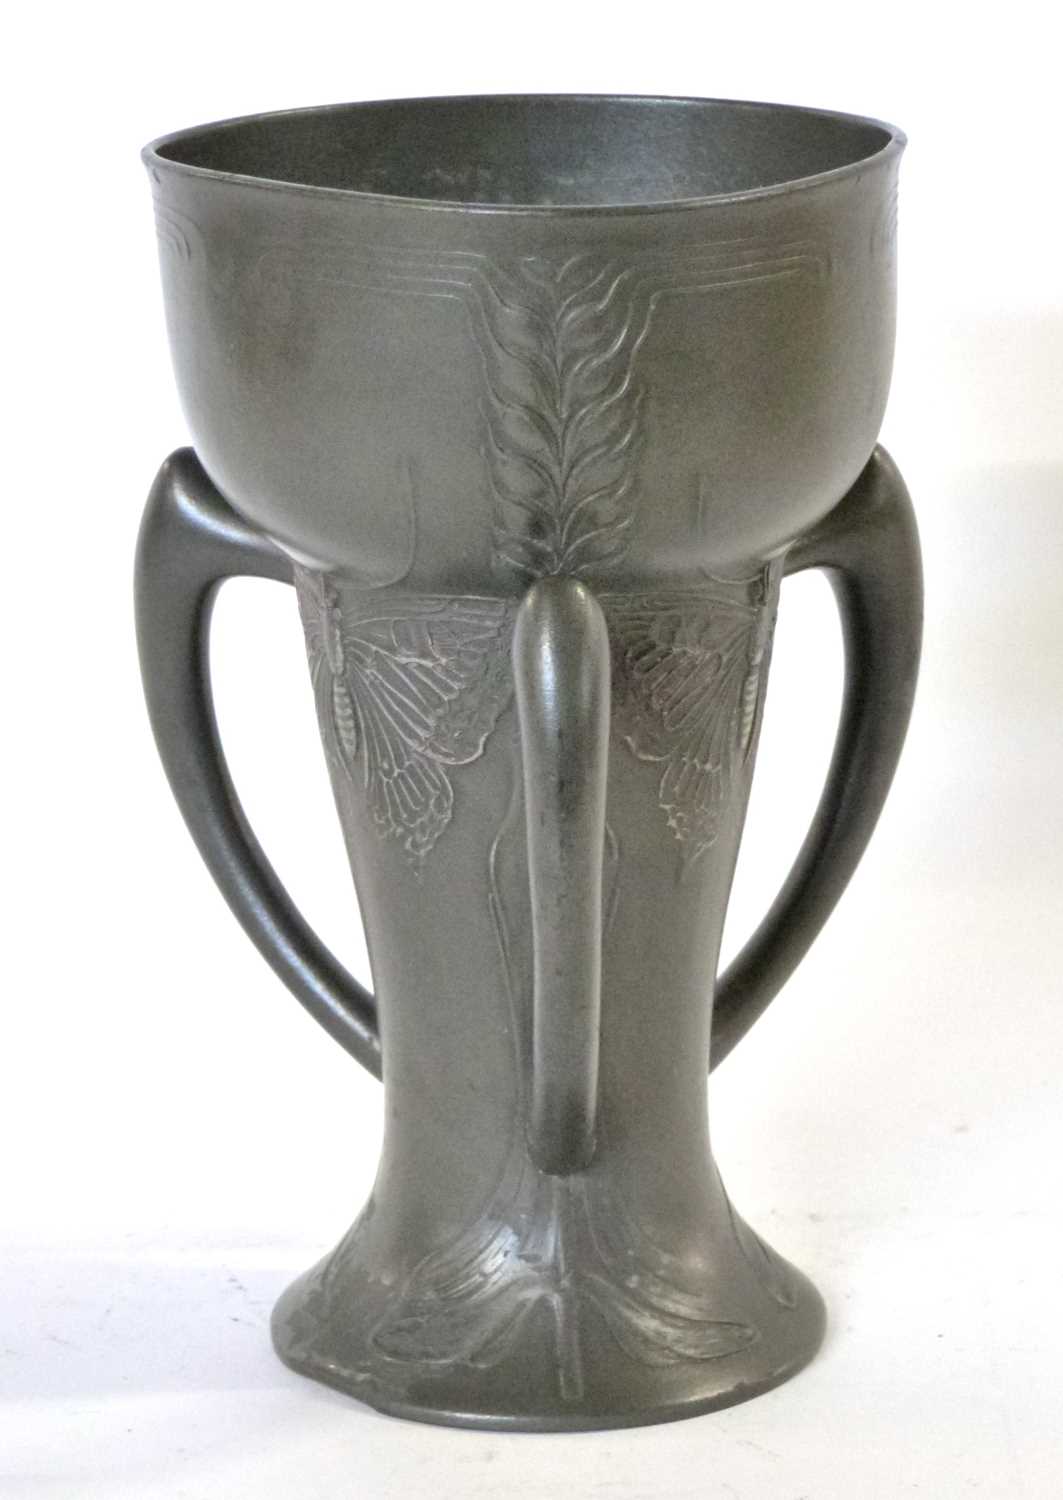 A German Jugendstil three handled pewter vase c1900 by the Kayserzinn Factory. Designer Hugo - Image 2 of 6